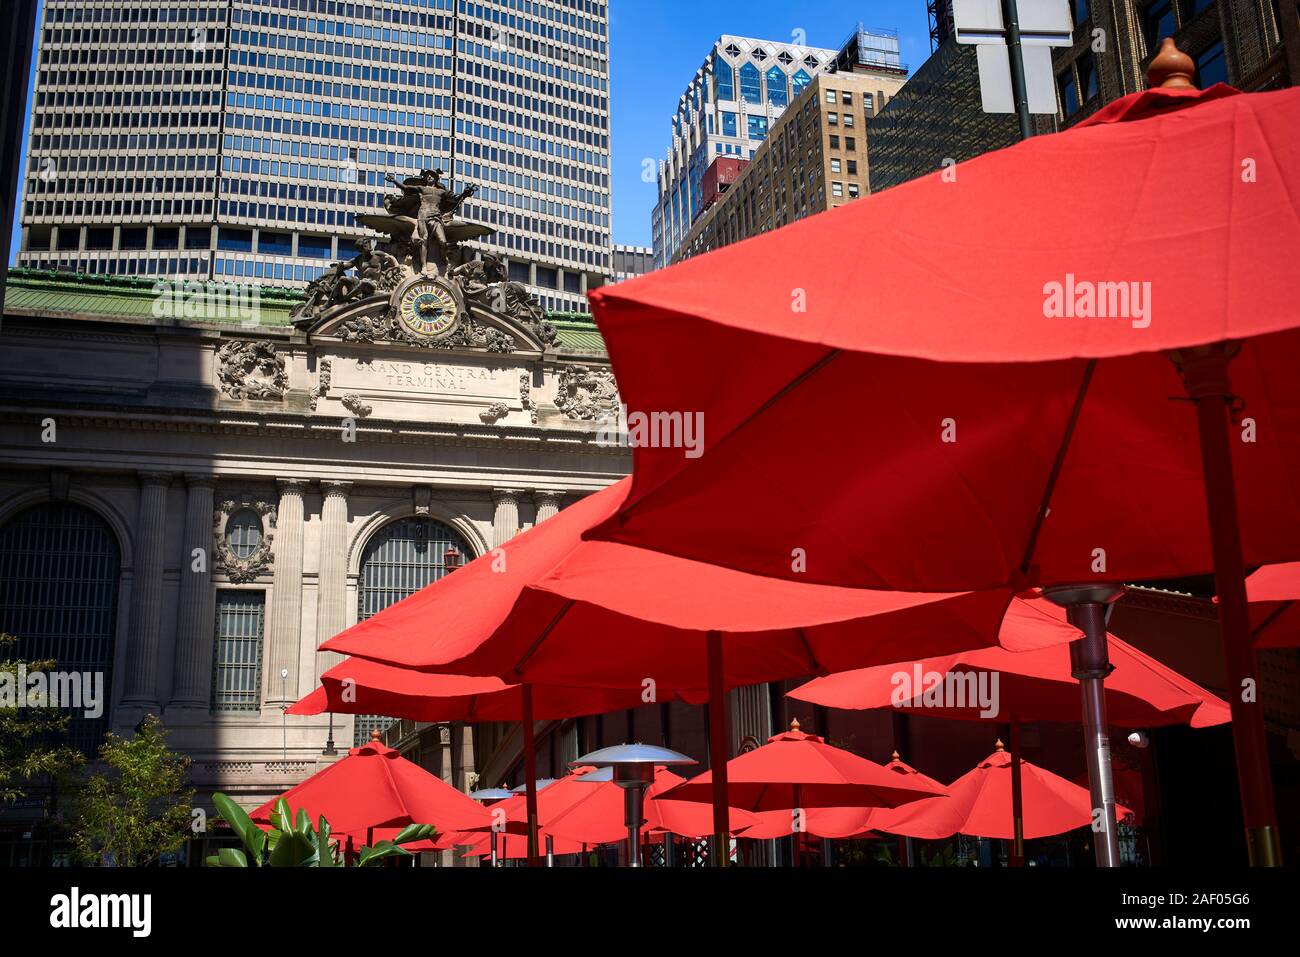 Rote Sonnenschirme außerhalb der Grand Central Station in Manhattan, New  York City Stockfotografie - Alamy